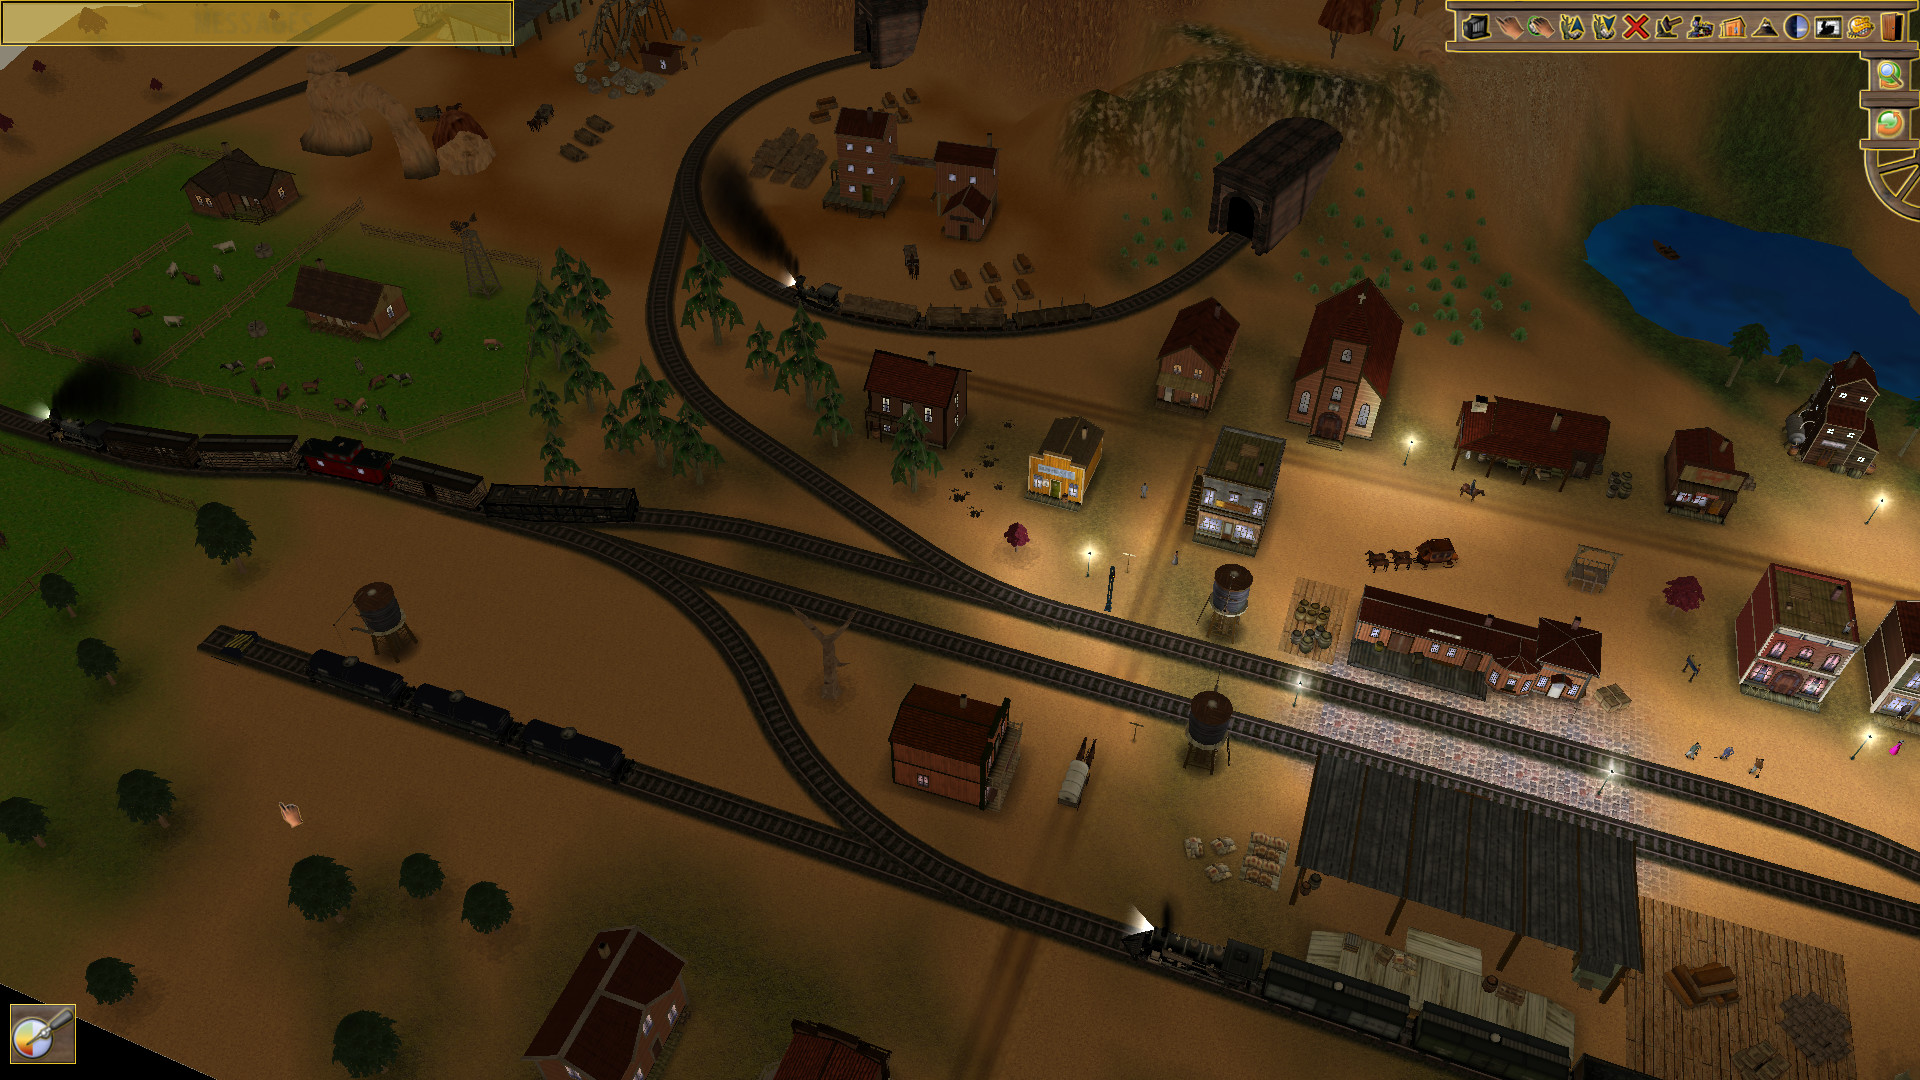 Wild West Steam Loco screenshot